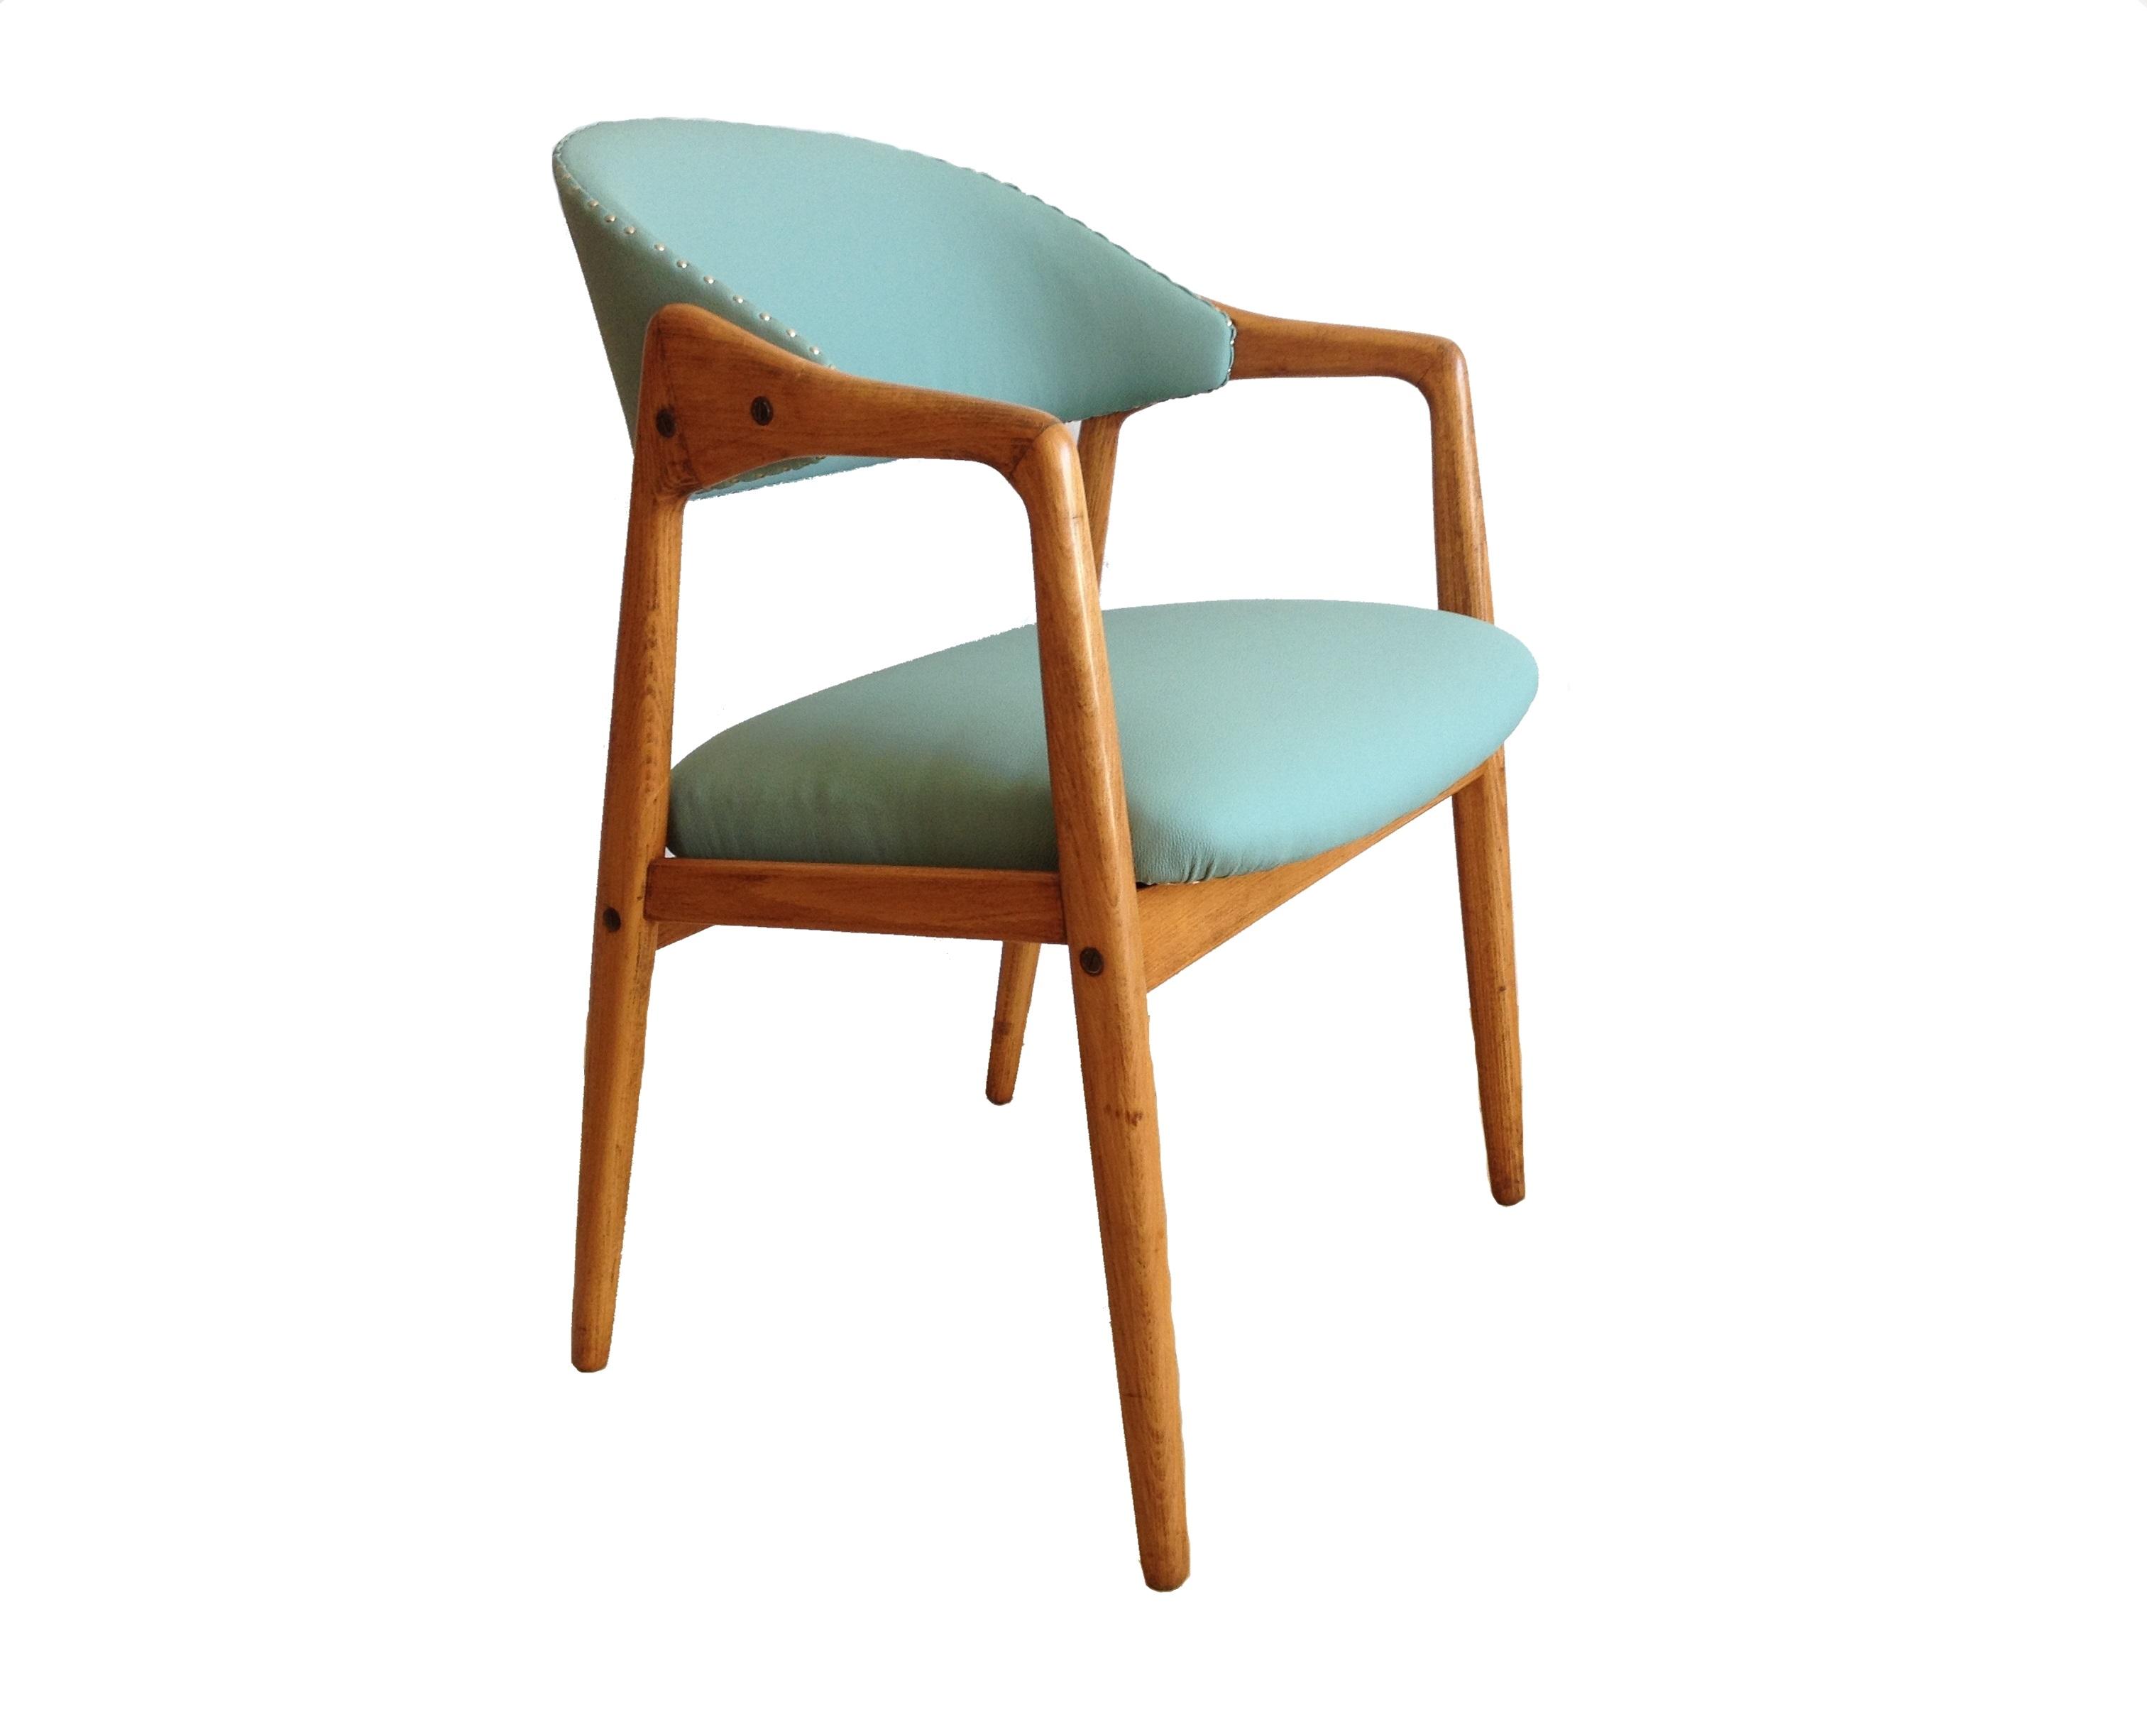 Stuhl, Sessel, Mid century, 60er Jahre #stuhl #arbeitszimmer #retro #vintage #sessel ©buashko